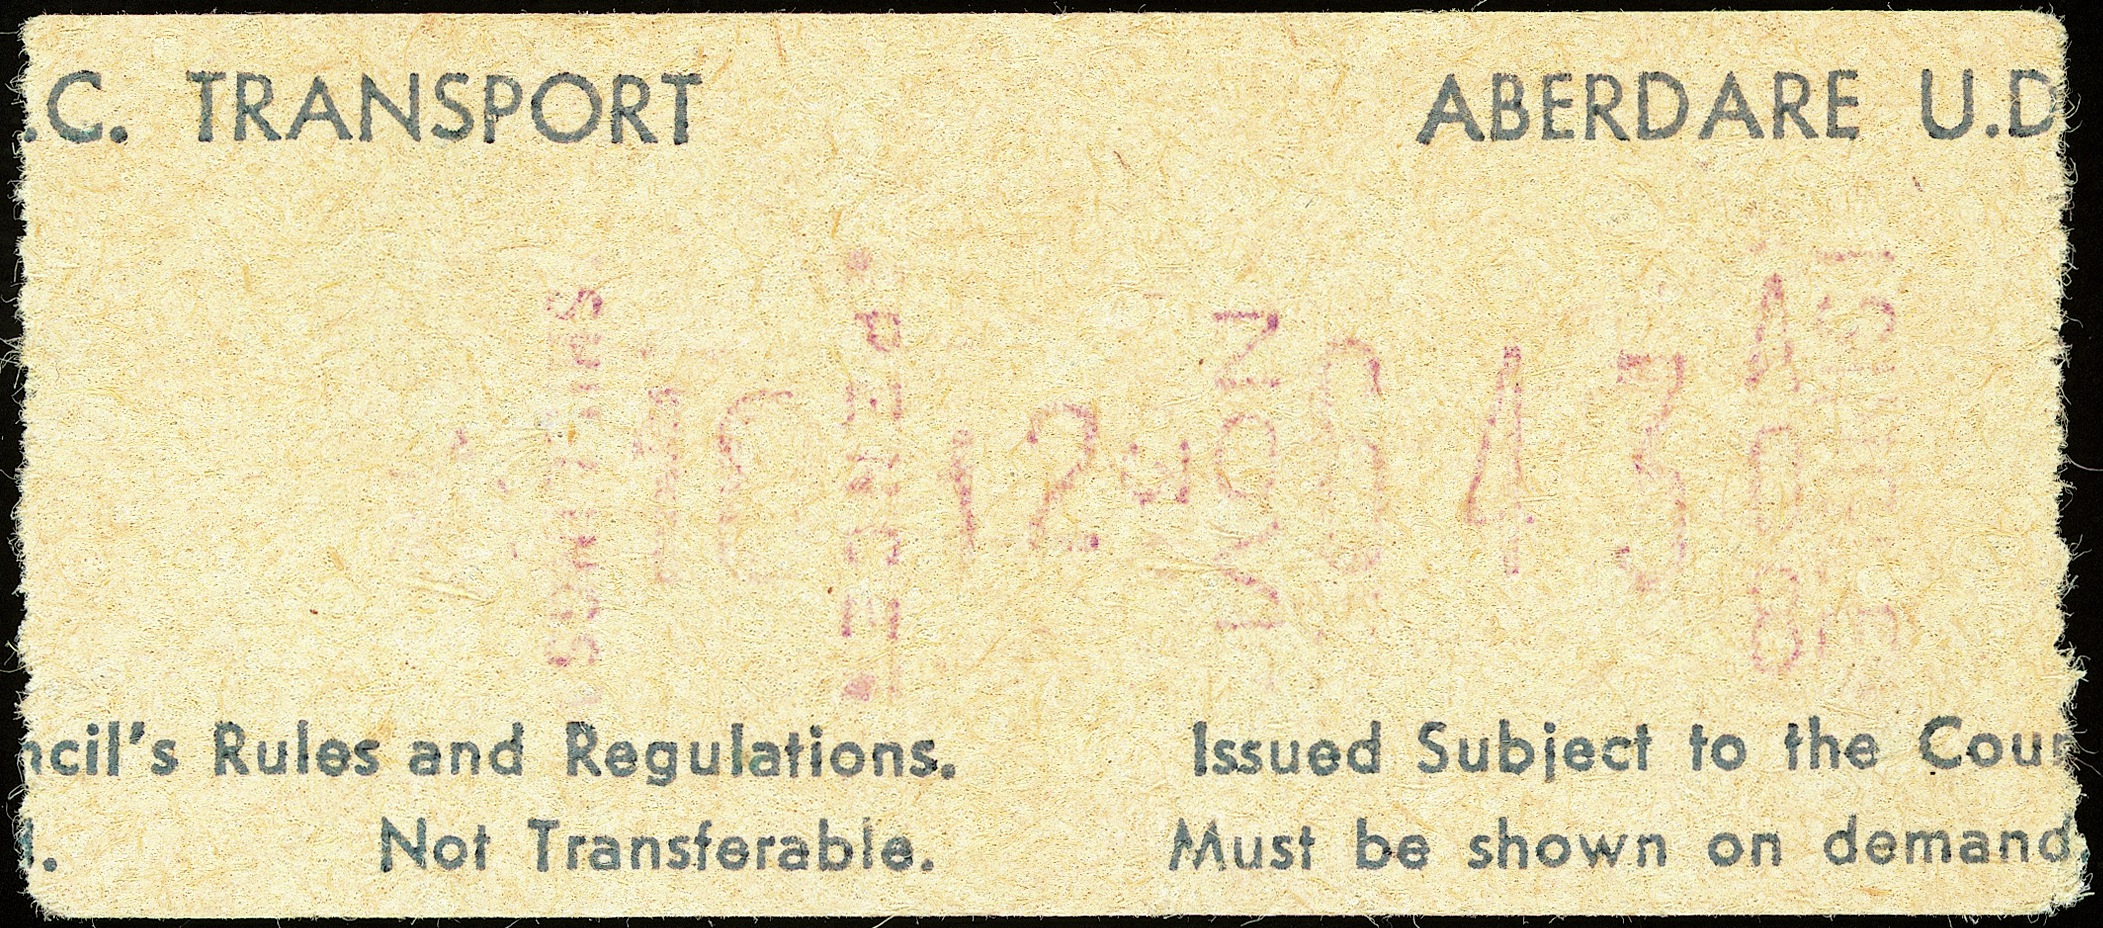 Aberdare U.D.C. bus ticket